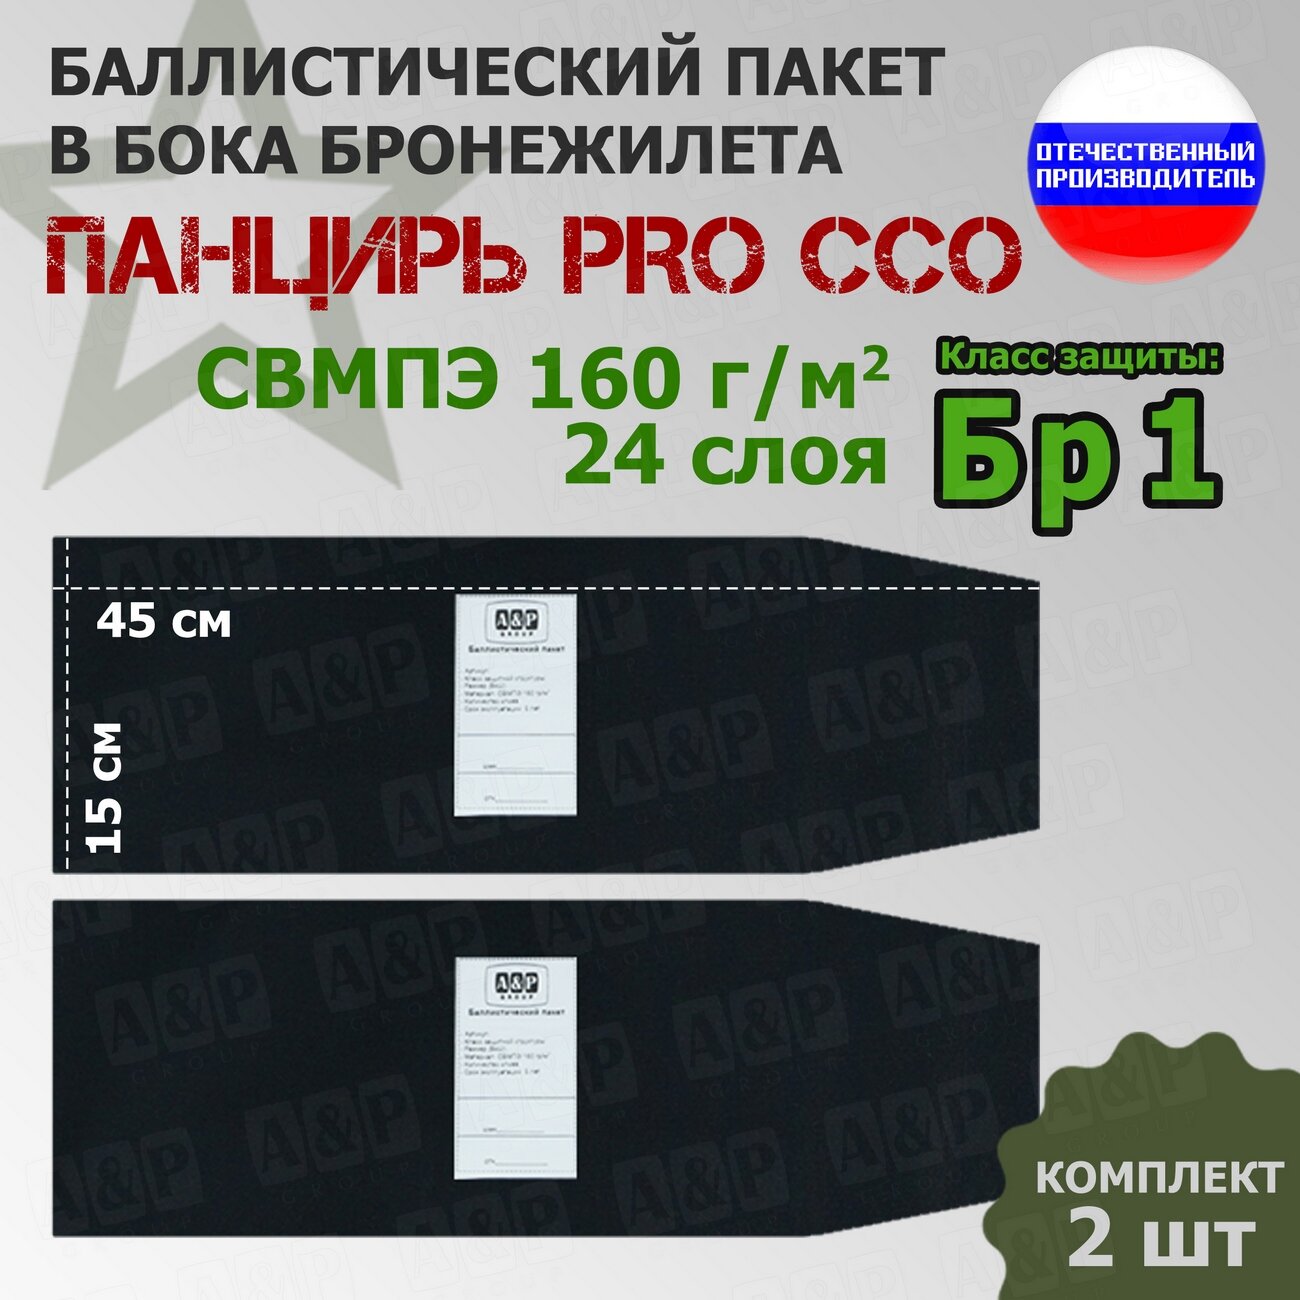 Баллистические пакеты в камербанды плитника "Панцирь PRO" от ССО. 45x15 см. Класс защитной структуры Бр 1.